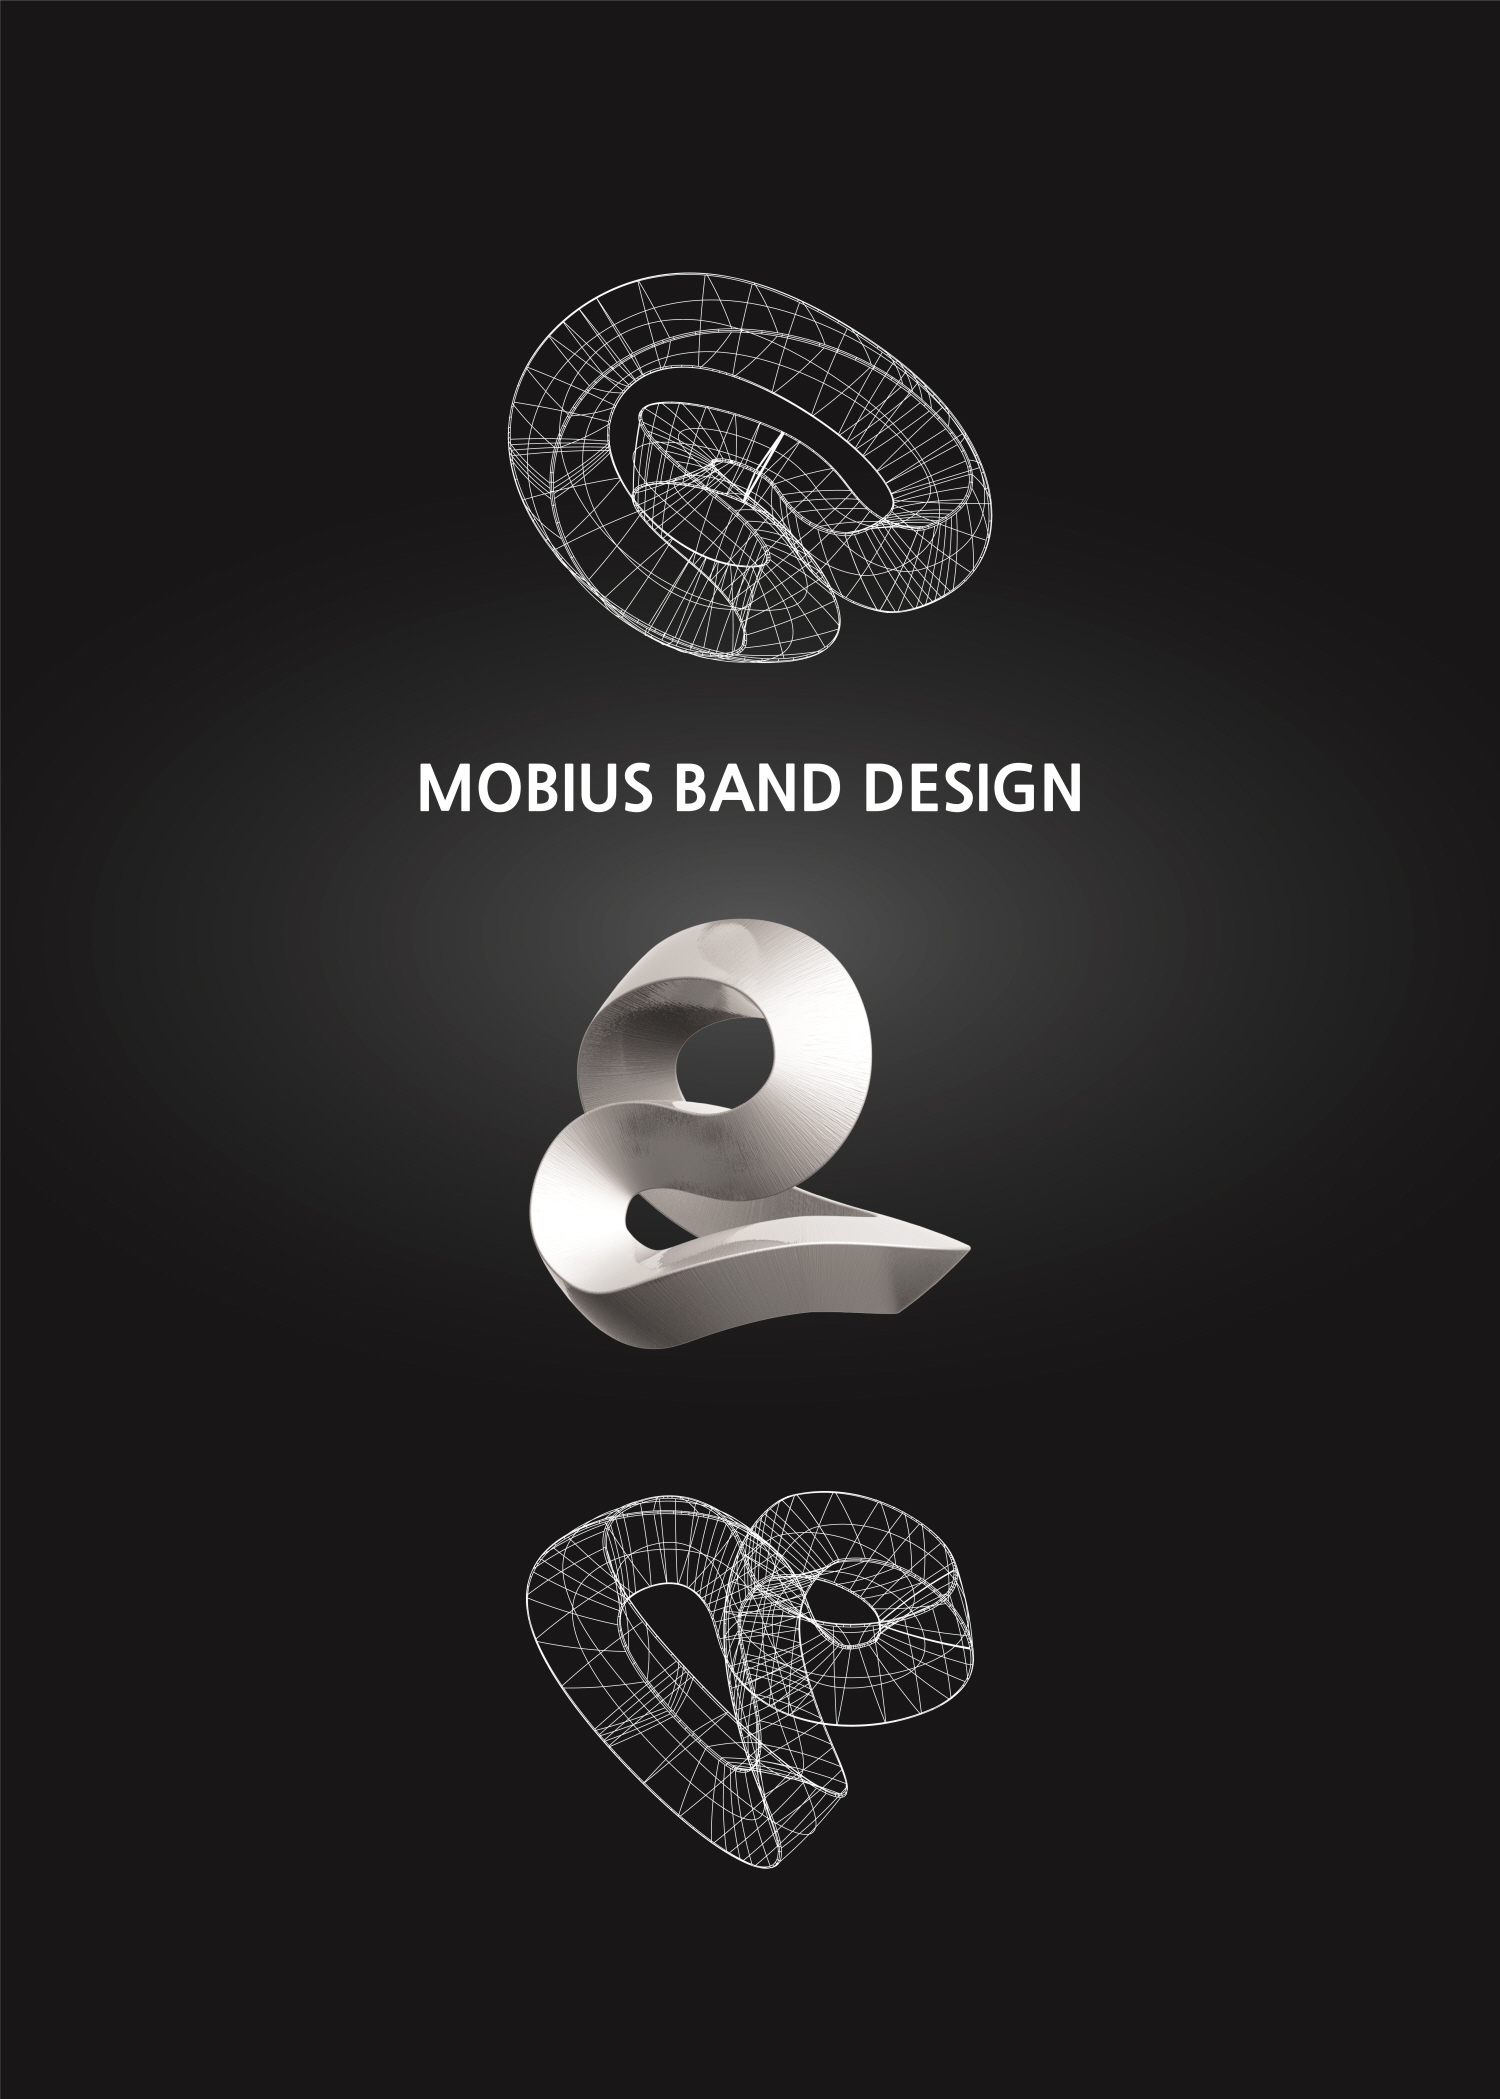 MOBIUS BAND DESIGN